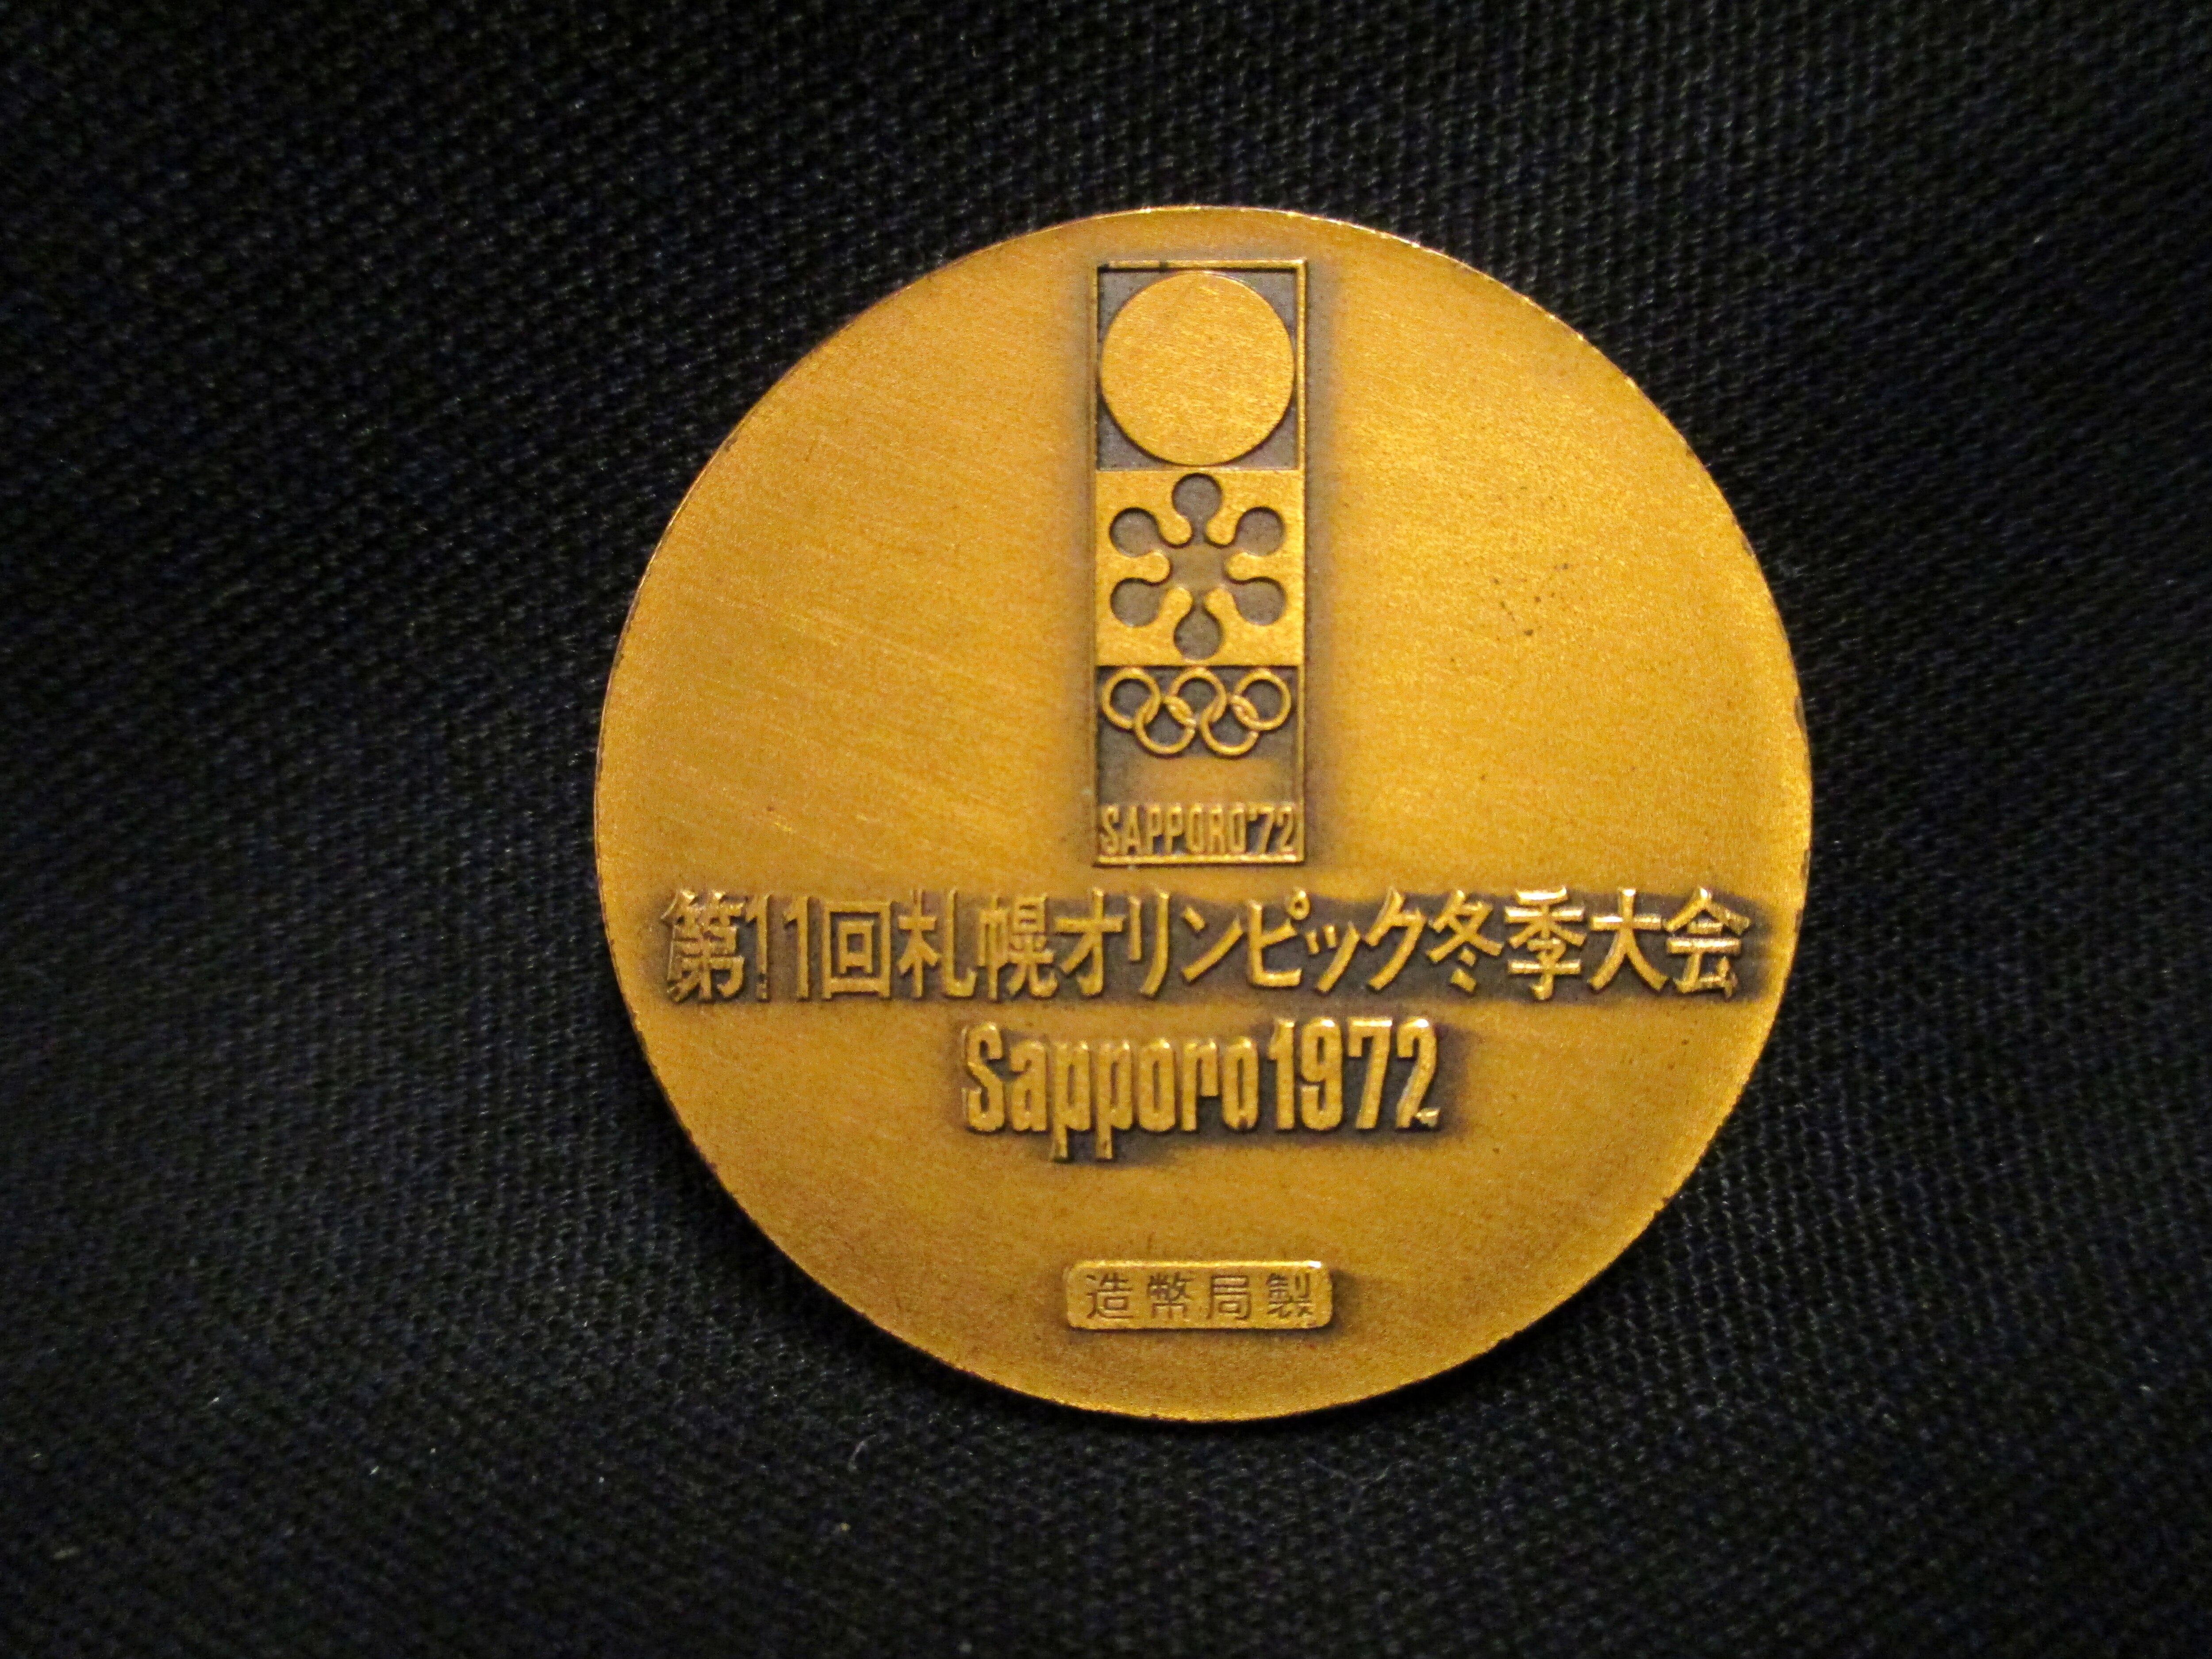 造幣局製 第11回札幌オリンピック冬季大会 sappoao 1972 記念メダル 